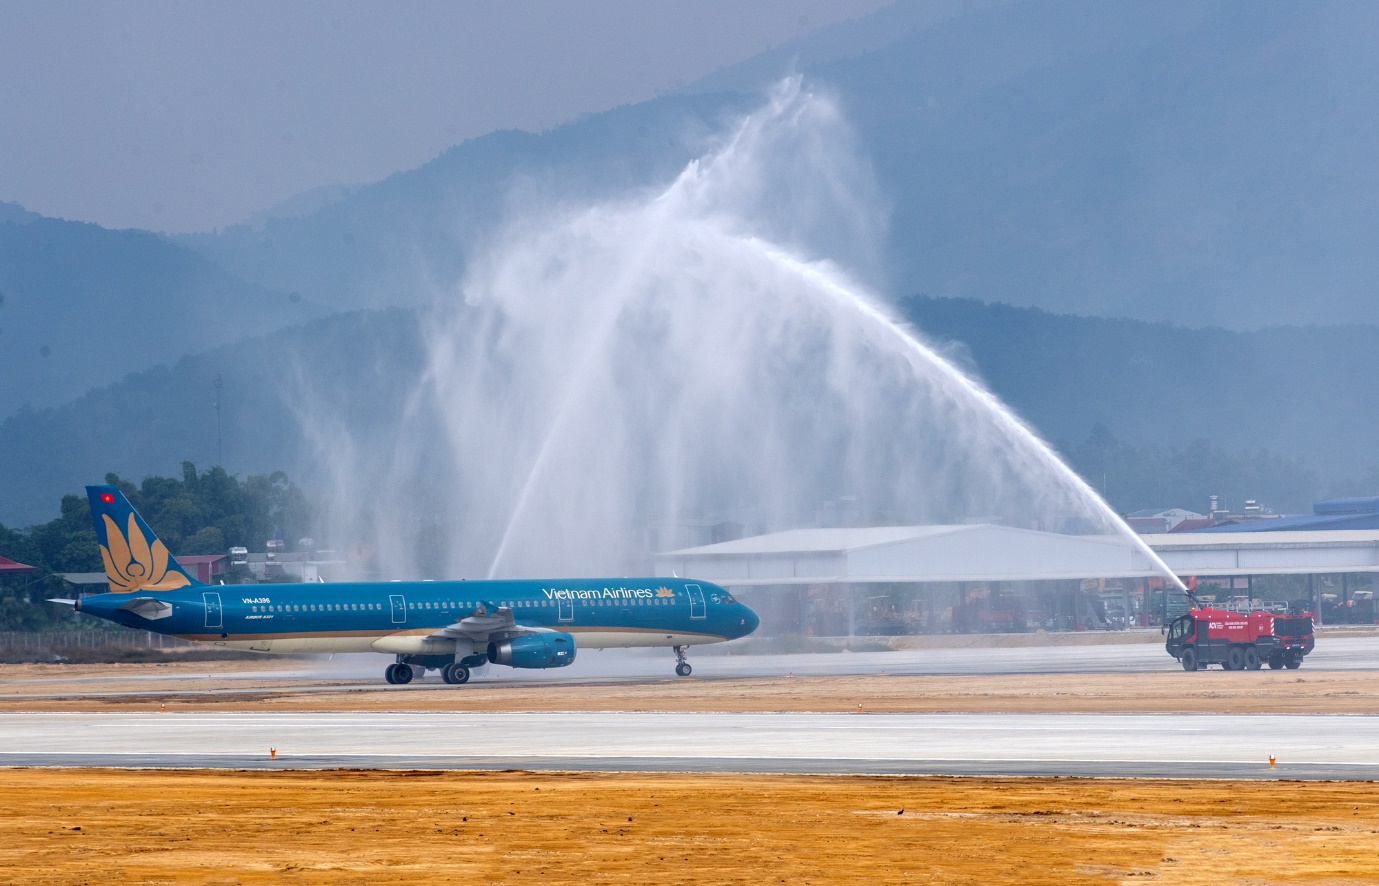 Lần đầu tiên trong lịch sử, sân bay Điện Biên chính thức đón máy bay cỡ lớn Airbus A321 - Ảnh 2.